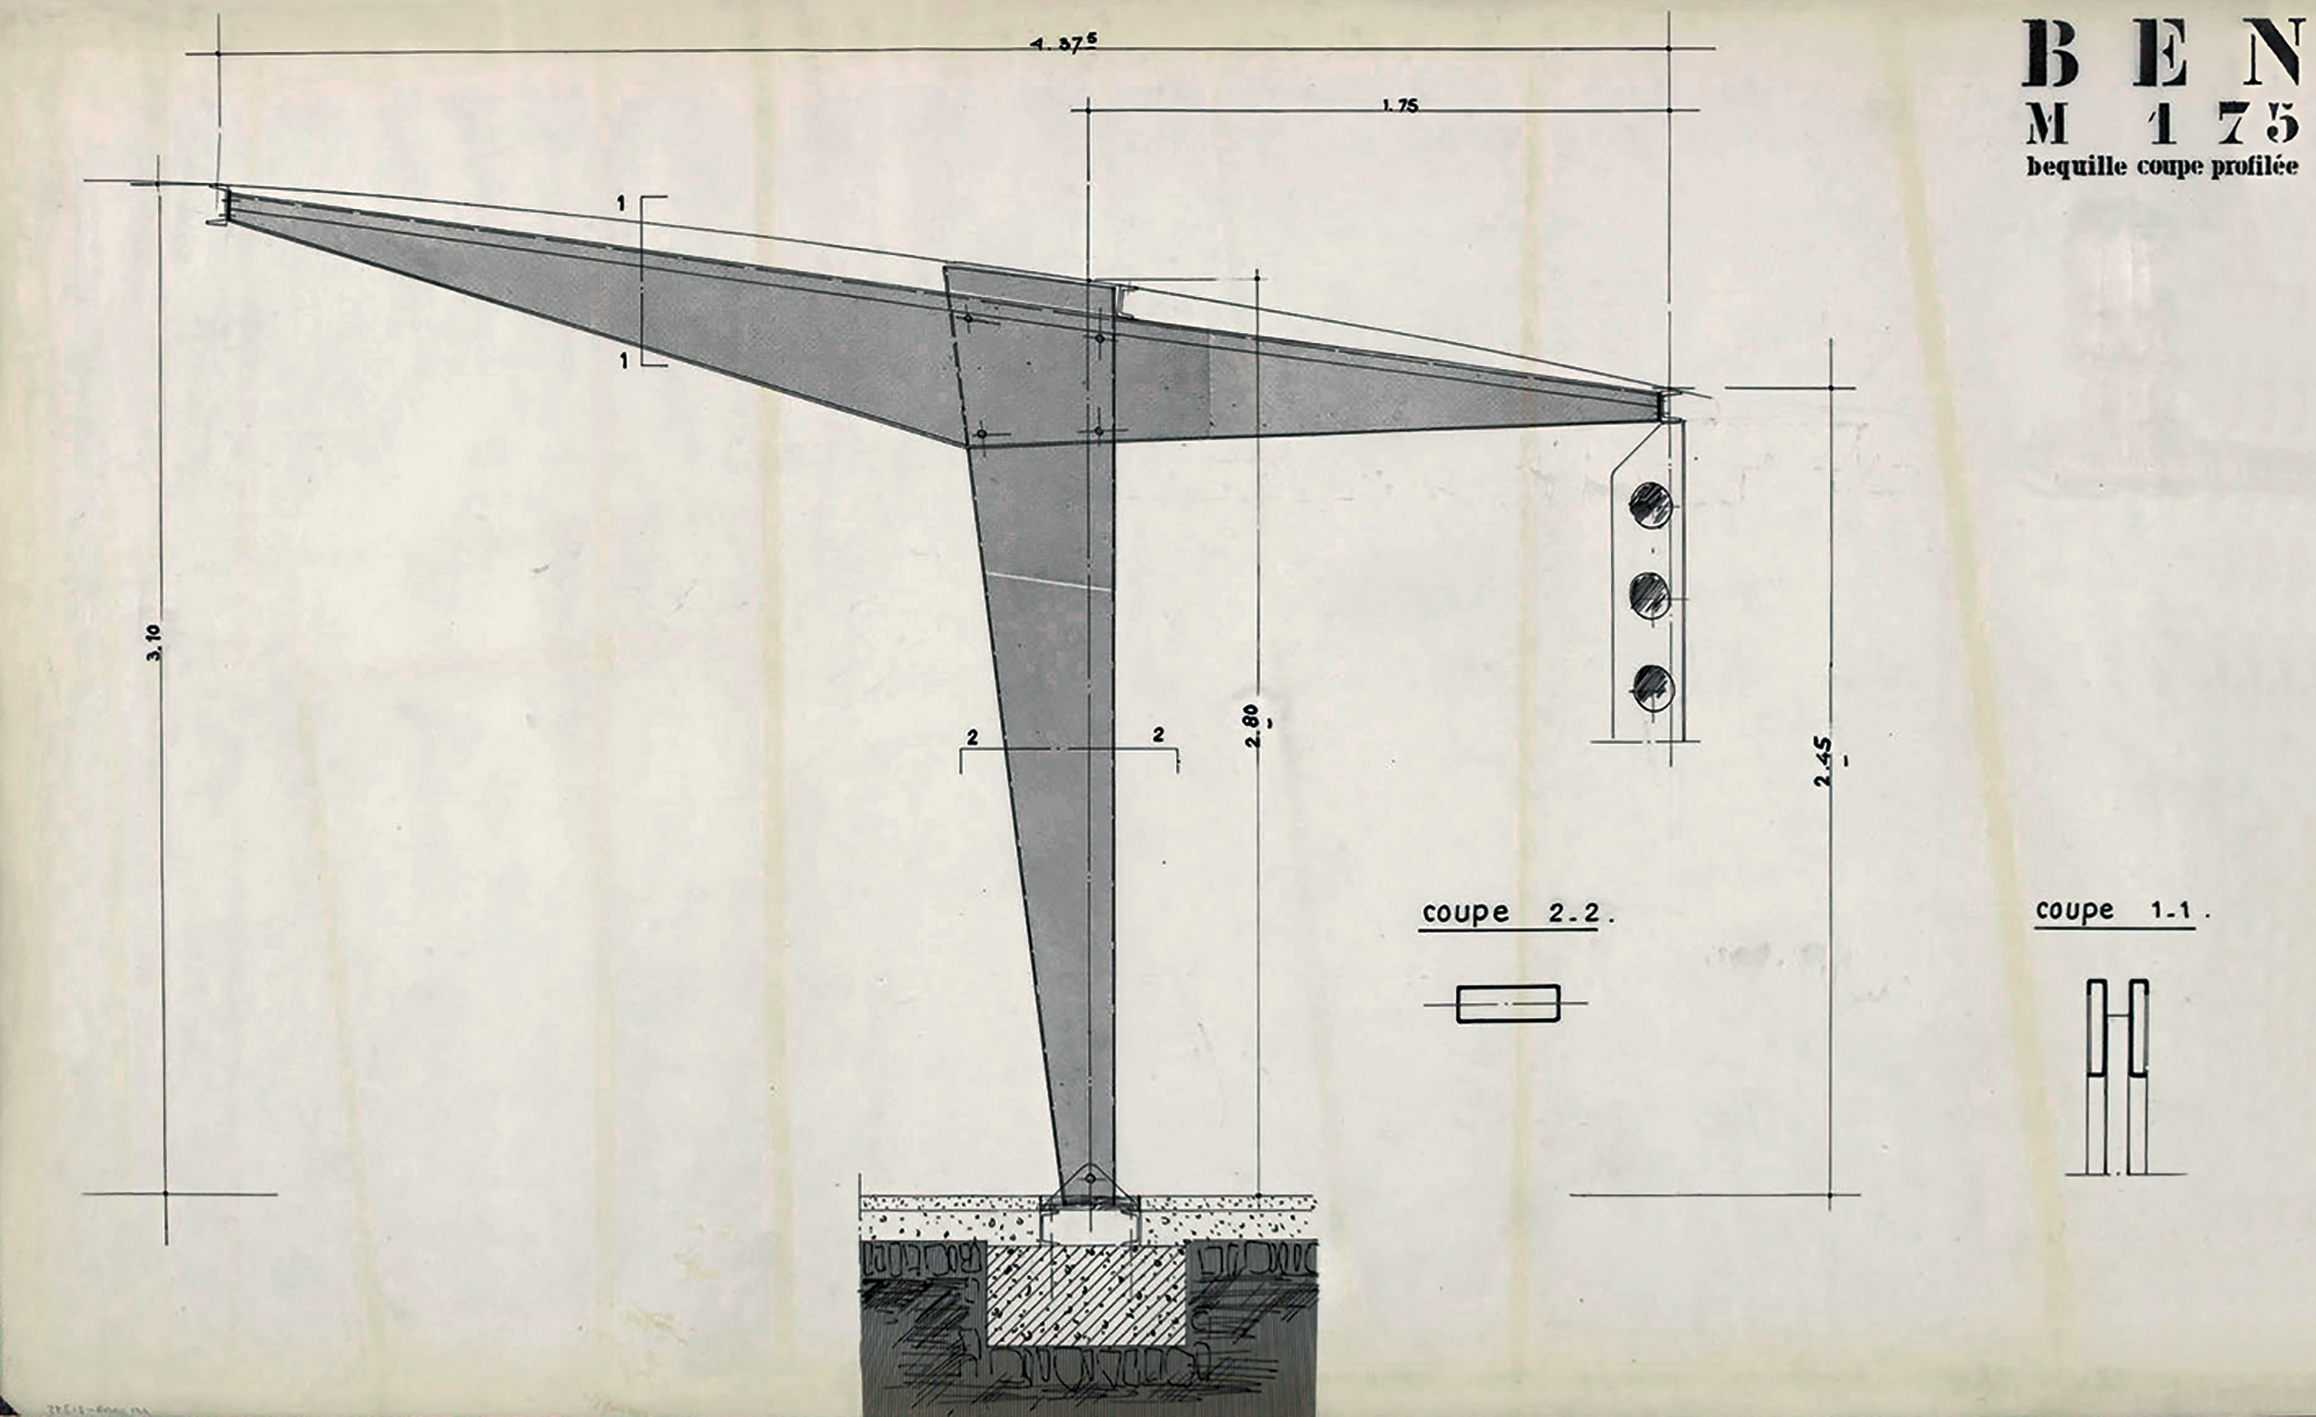 Les Constructions Jean Prouvé. “Strut: profiled section” for BEN M175 school (National Education Building, grid 175 centimeters), ca. 1957.